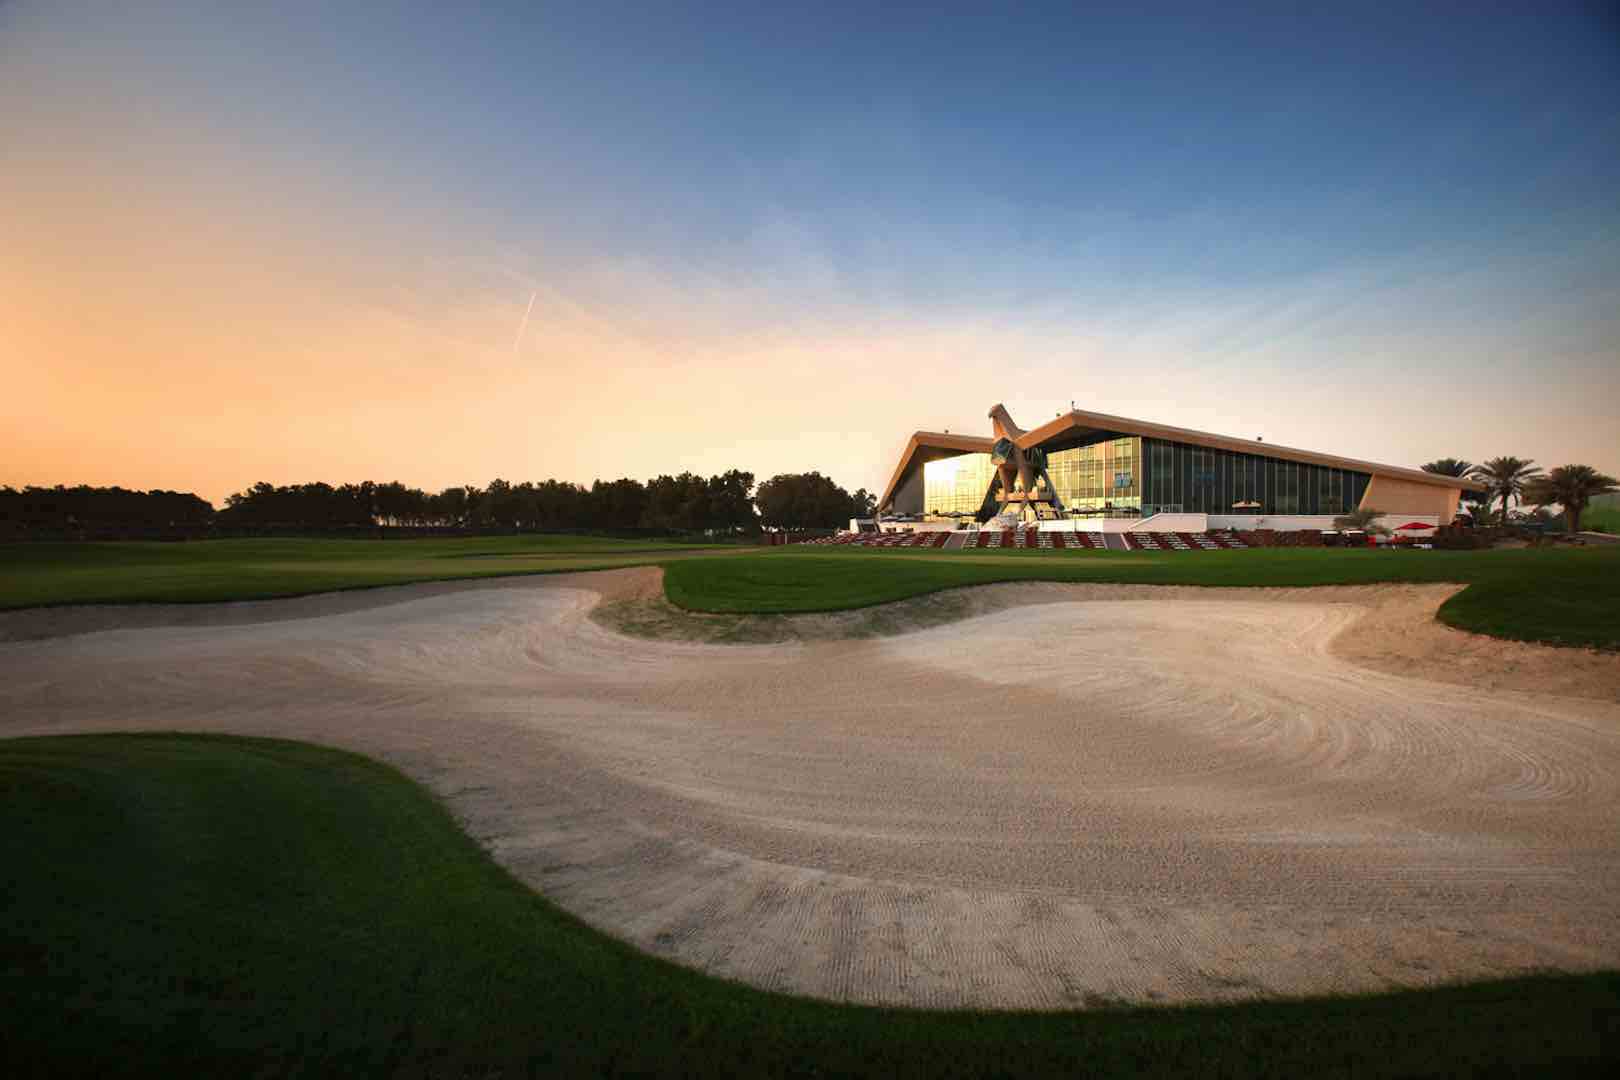 Î‘Ï€Î¿Ï„Î­Î»ÎµÏƒÎ¼Î± ÎµÎ¹ÎºÏŒÎ½Î±Ï‚ Î³Î¹Î± Abu Dhabi and Saadiyat Beach Golf Clubs to host the first Troon International Trophy